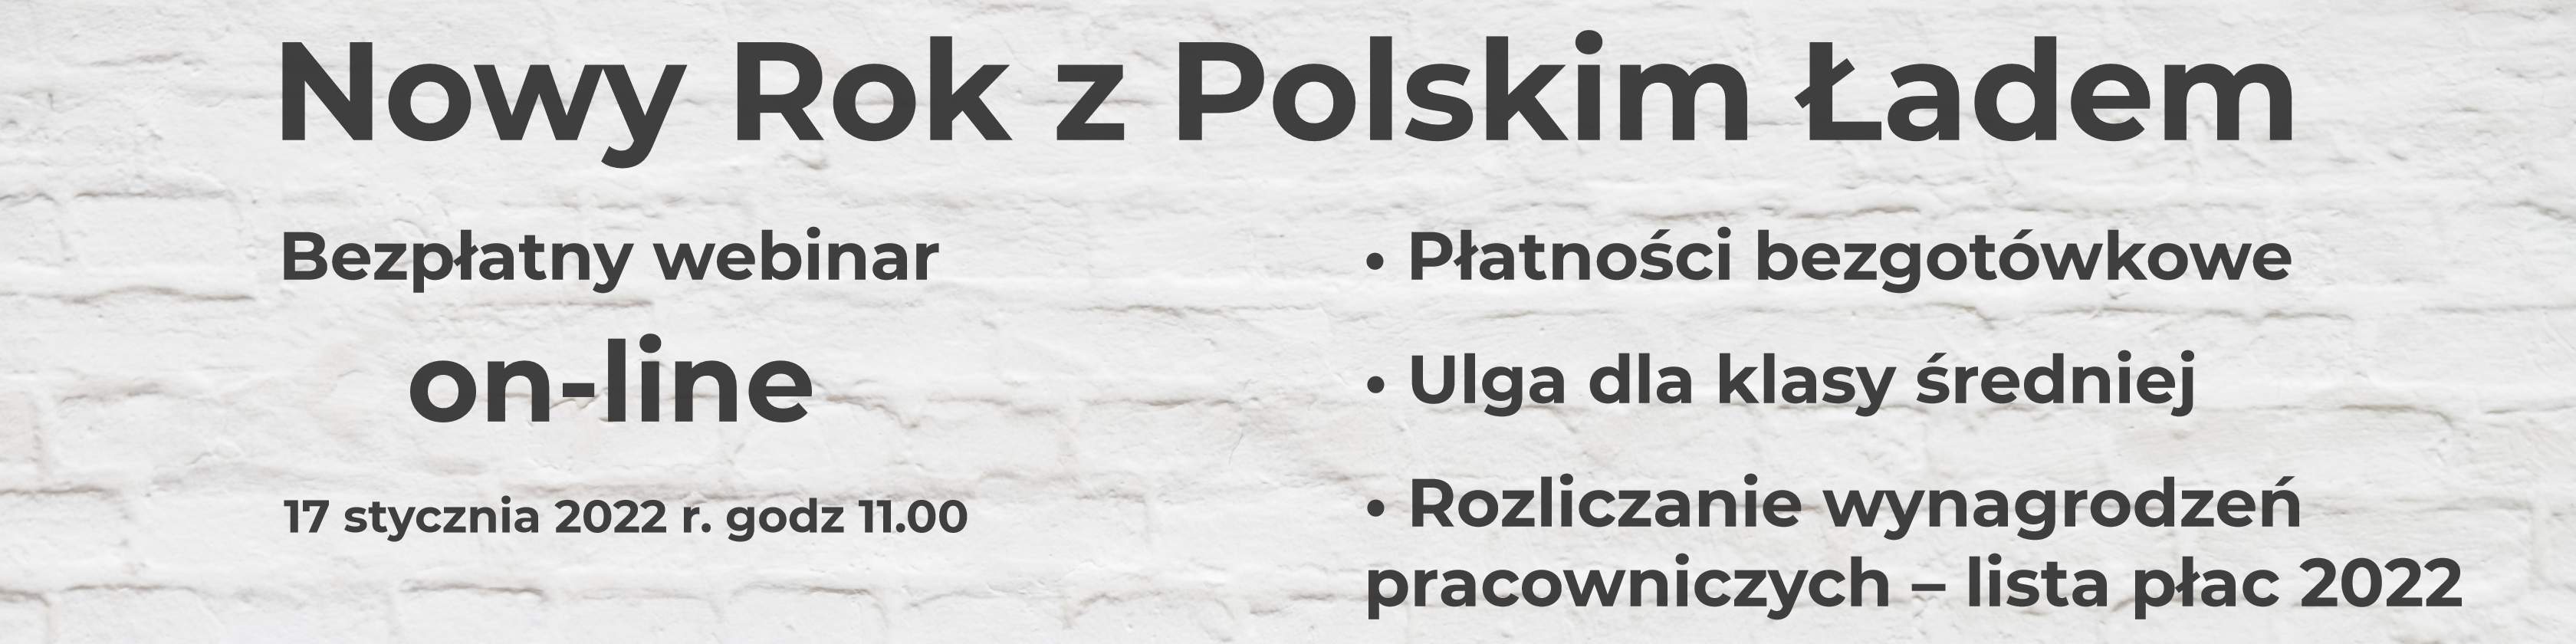 Bezpłatny webinar - Nowy Rok z Polskim Ładem